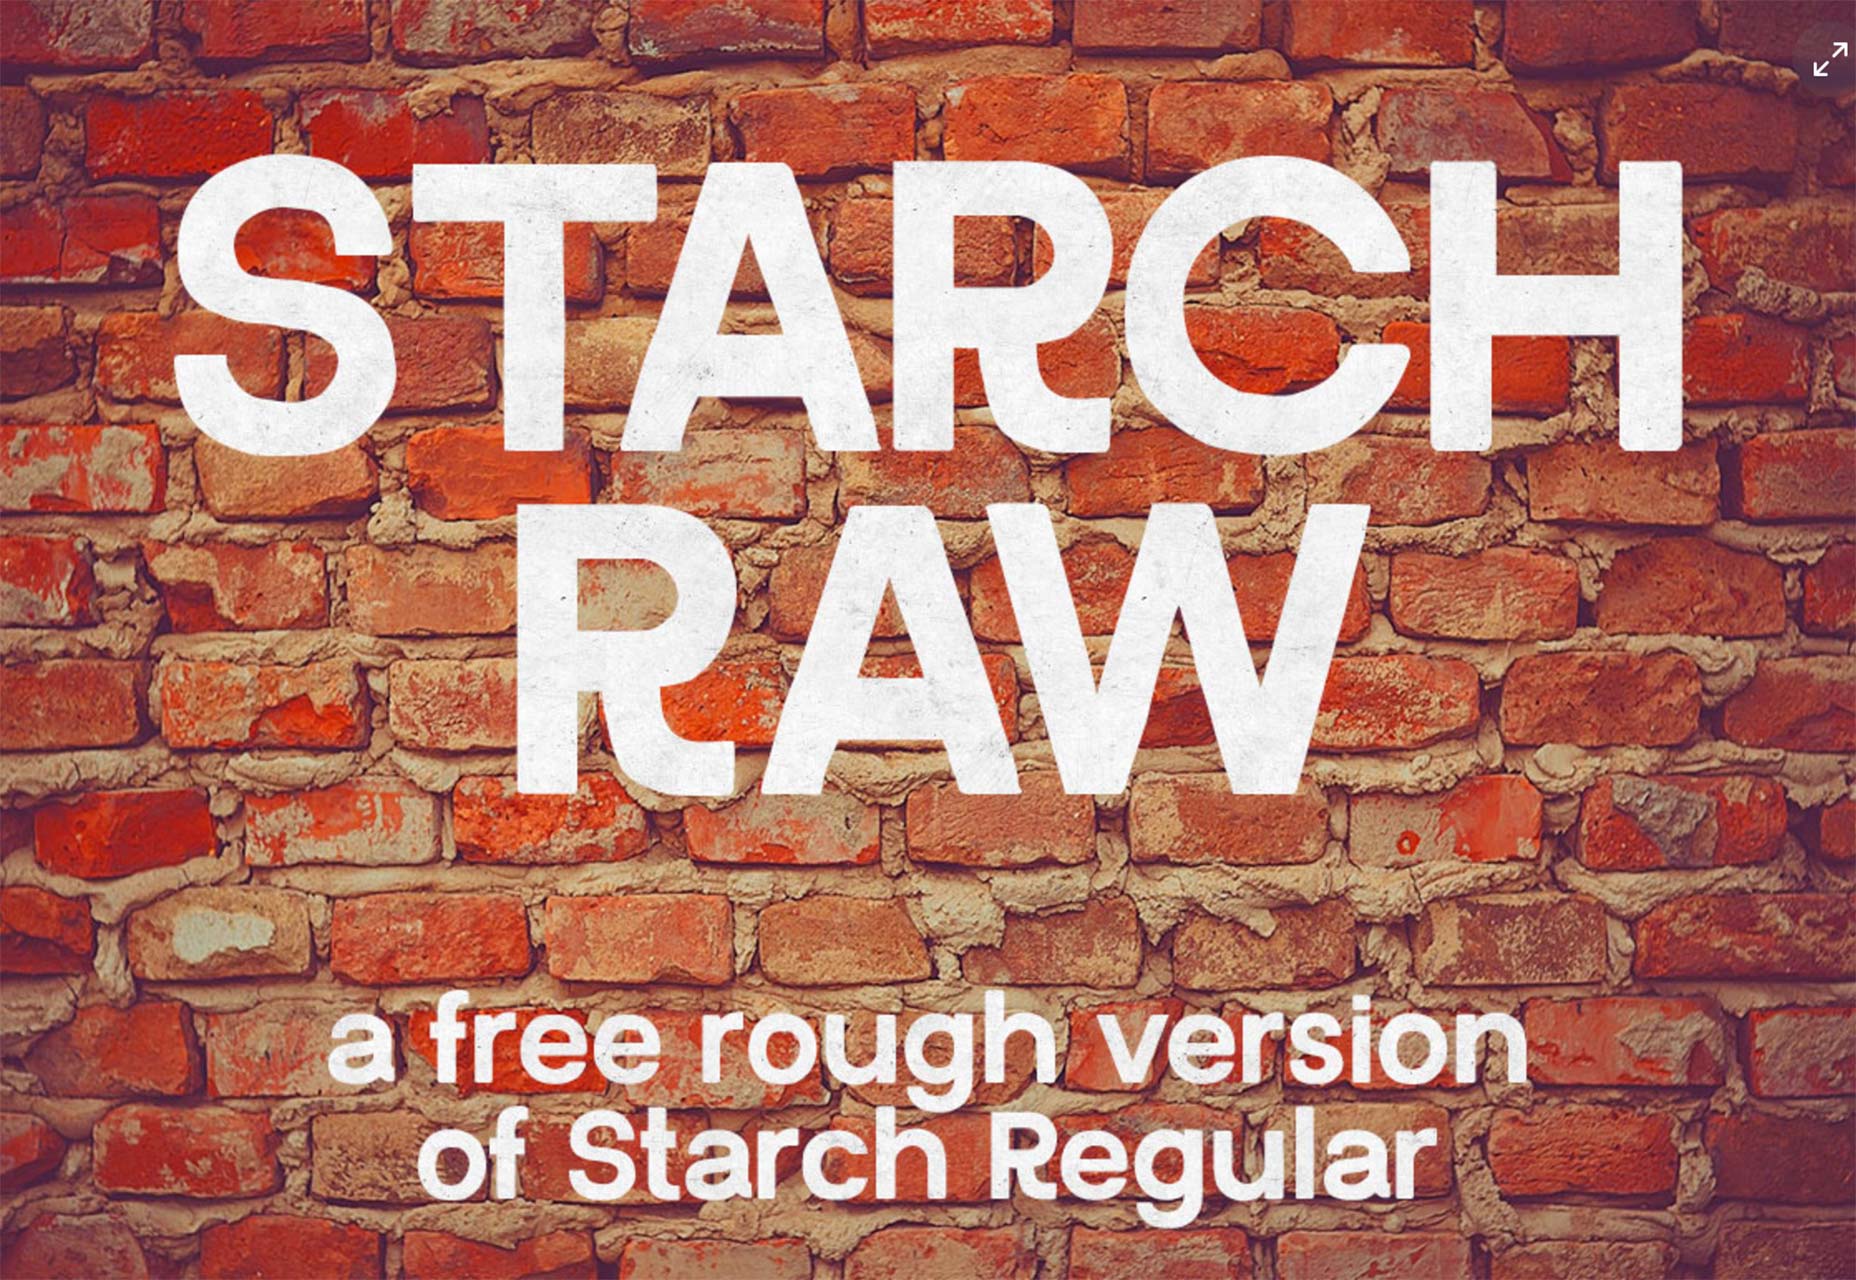 starchraw